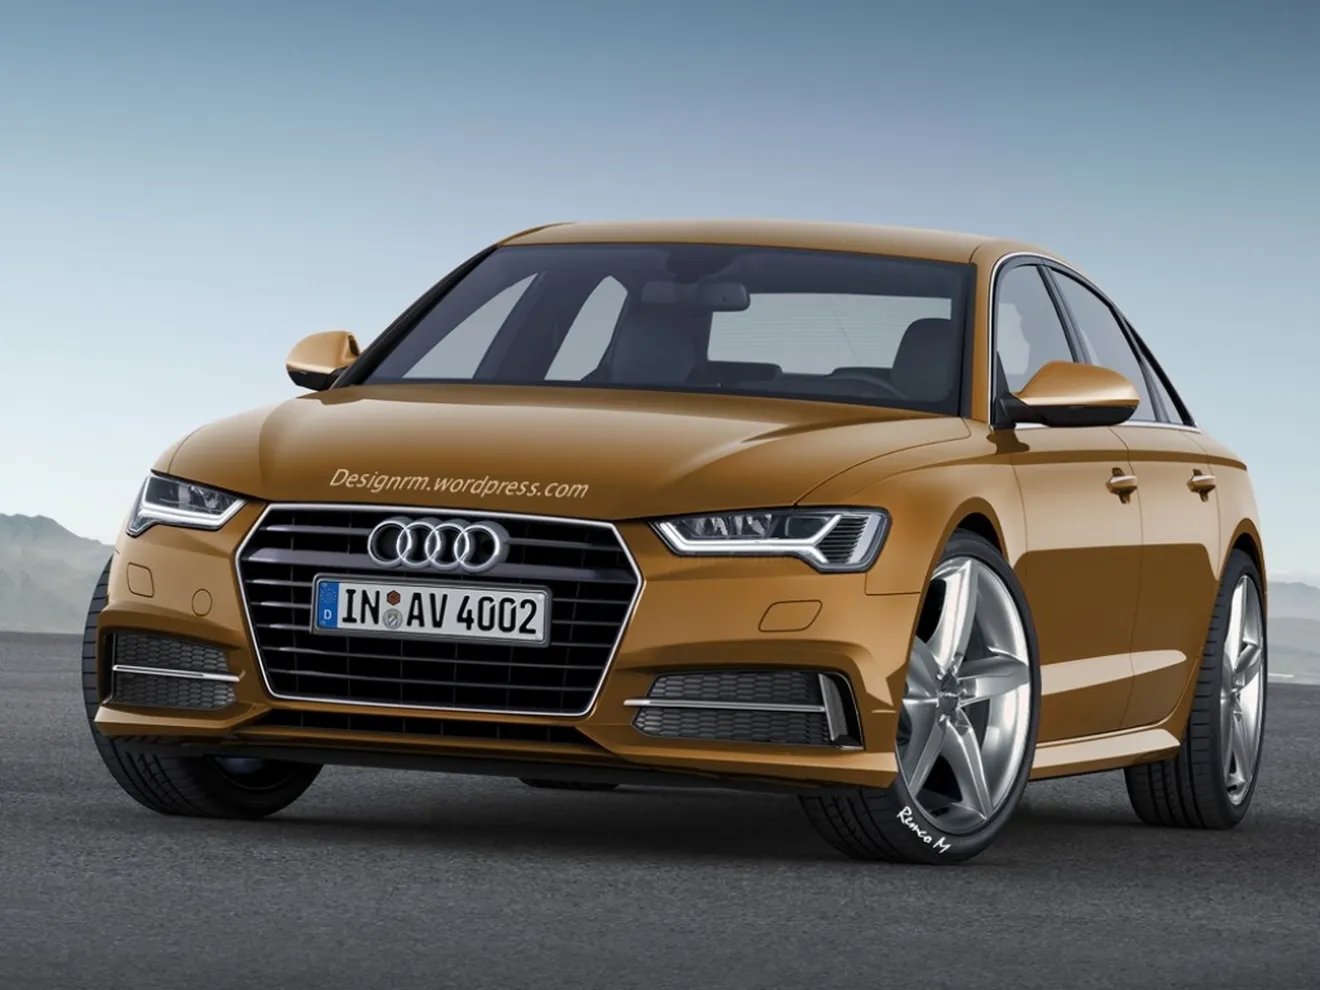 Audi A4 2015, imaginando el diseño de la nueva generación B9